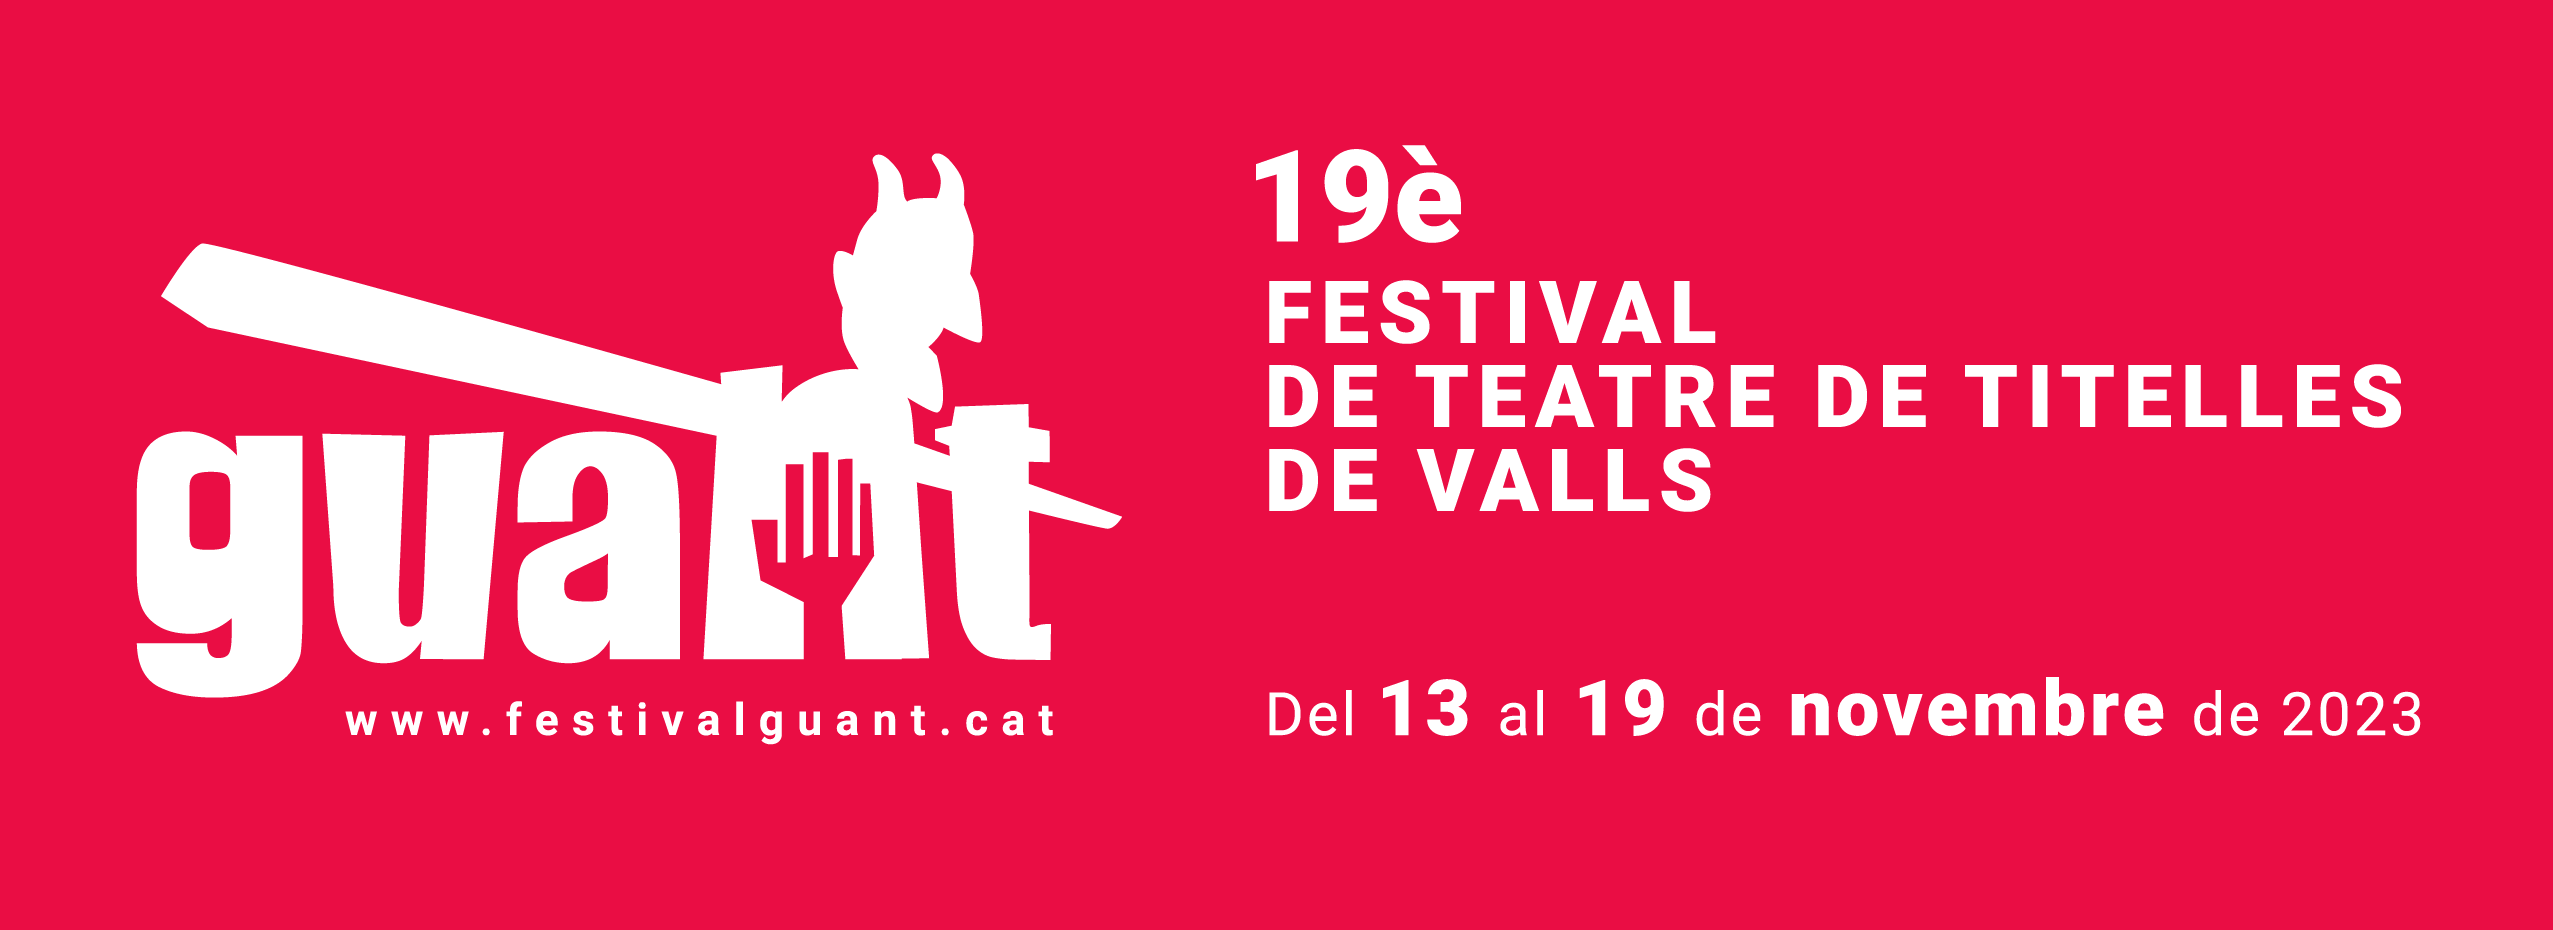 19è Festival internacional de teatre de titelles de Valls | ROIG PÈL-BOIG